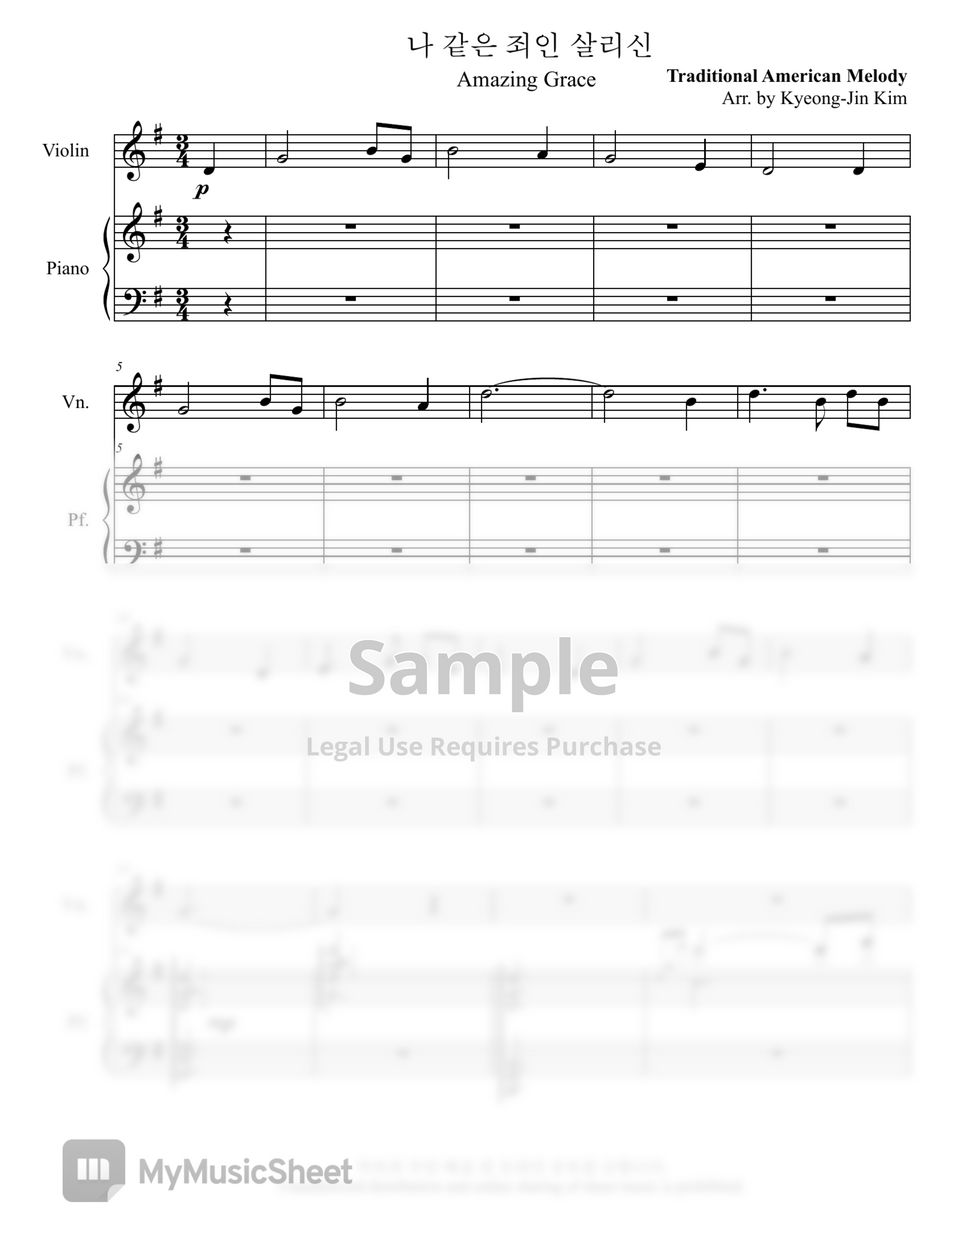 Hymn for Violin(찬송가 바이올린 편곡) - Amazing Grace(나 같은 죄인 살리신) by Pianist Jin